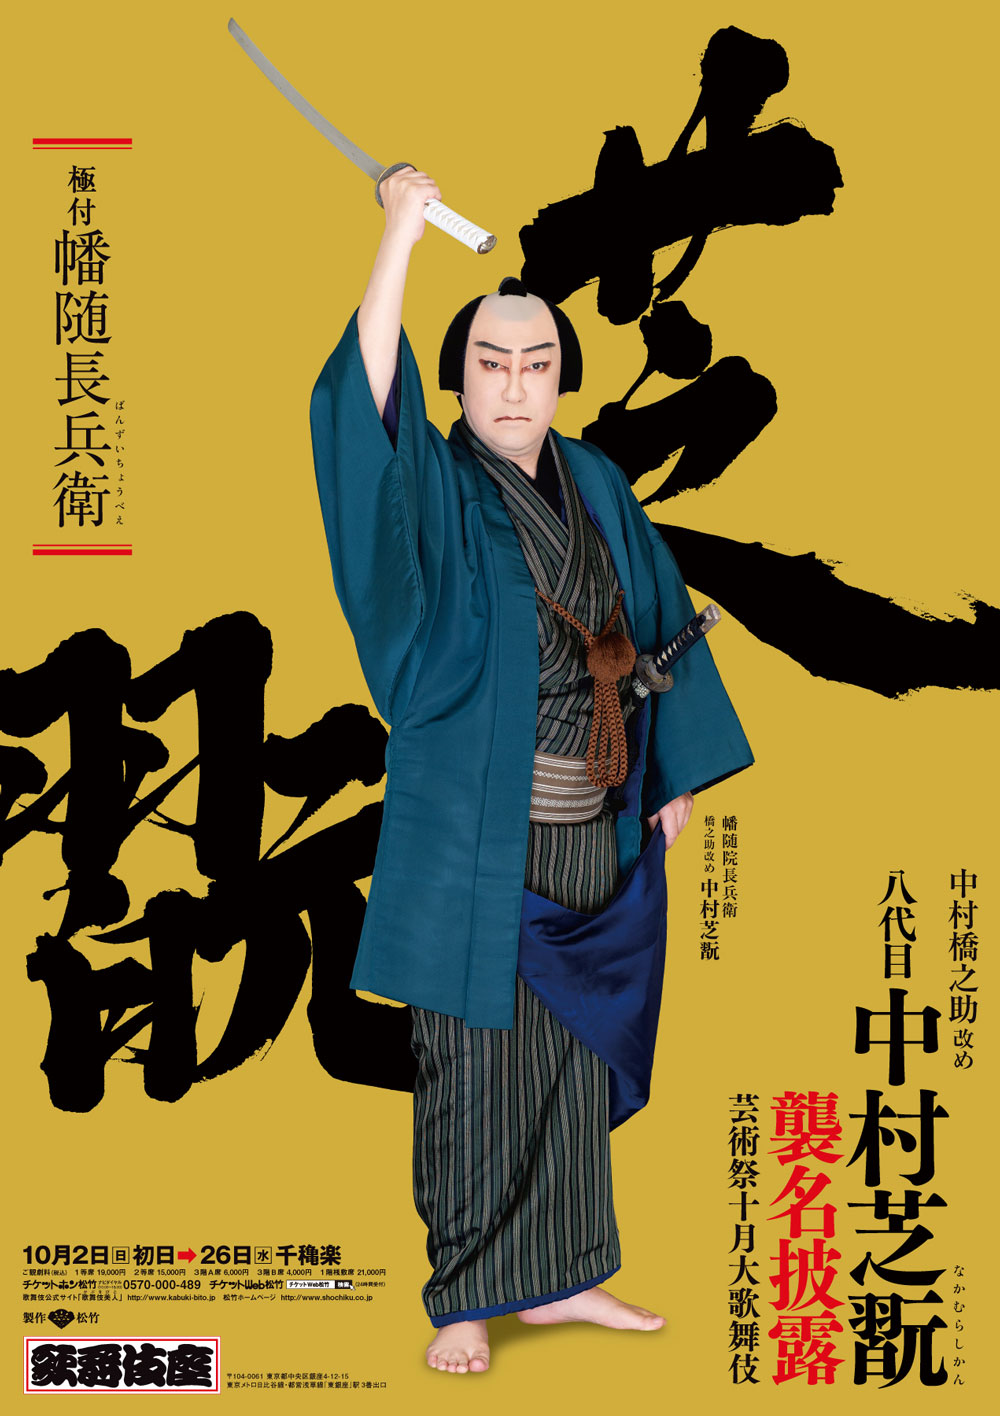 歌舞伎座「芸術祭十月大歌舞伎」特別ポスター公開